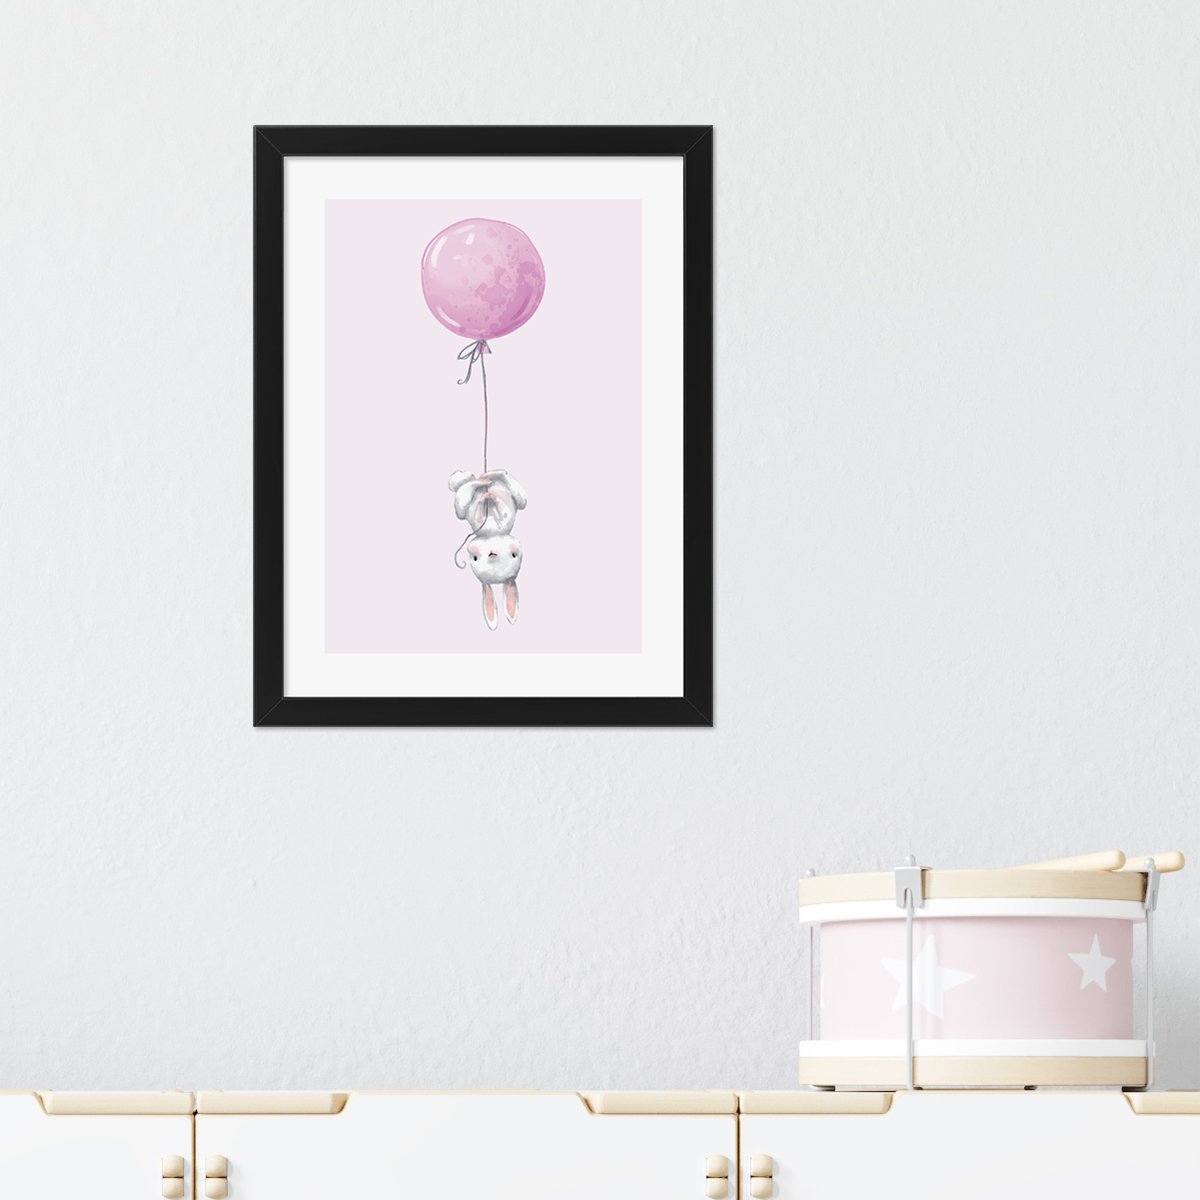 Plakaty dla dzieci z balonem i królikiem - zestaw z czarna ramką#kolor_rozowy